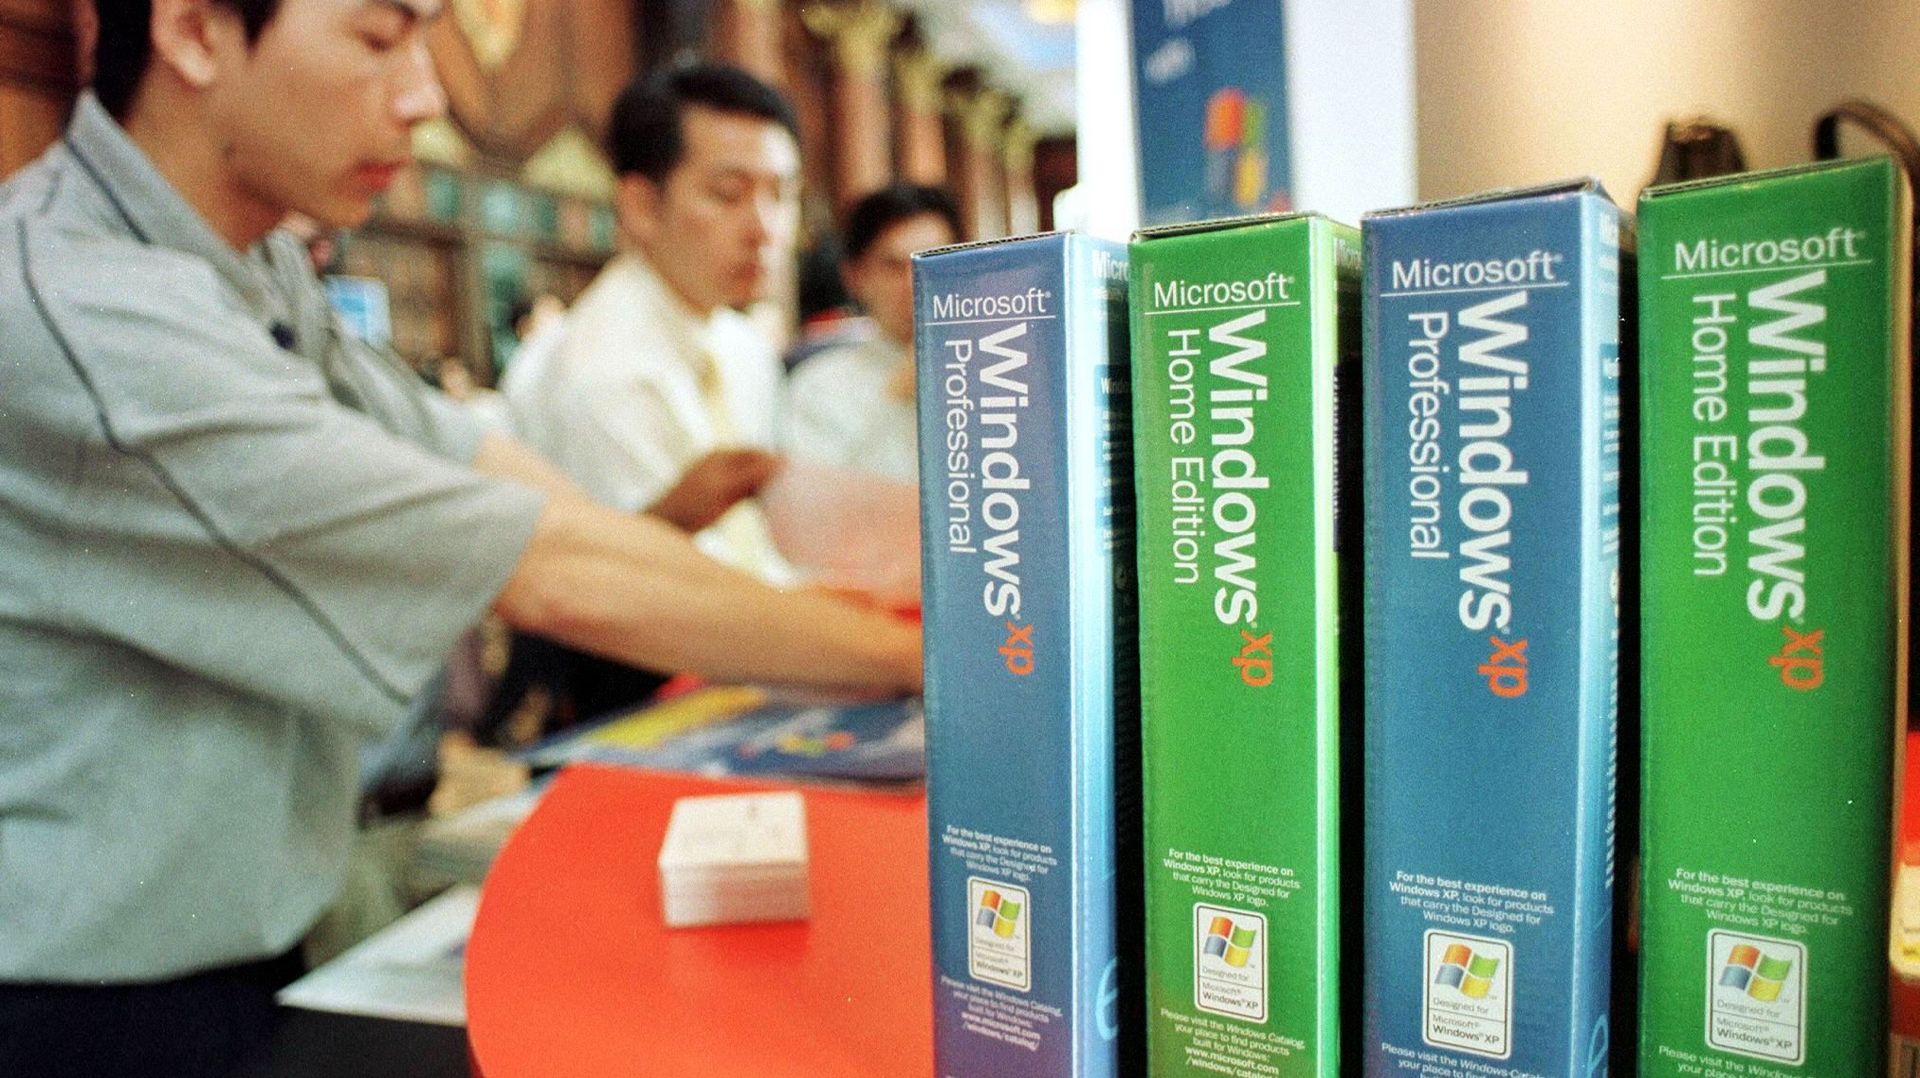 Windows XP, c'est -bientôt- fini. Quelle migration vers quel système d’exploitation?